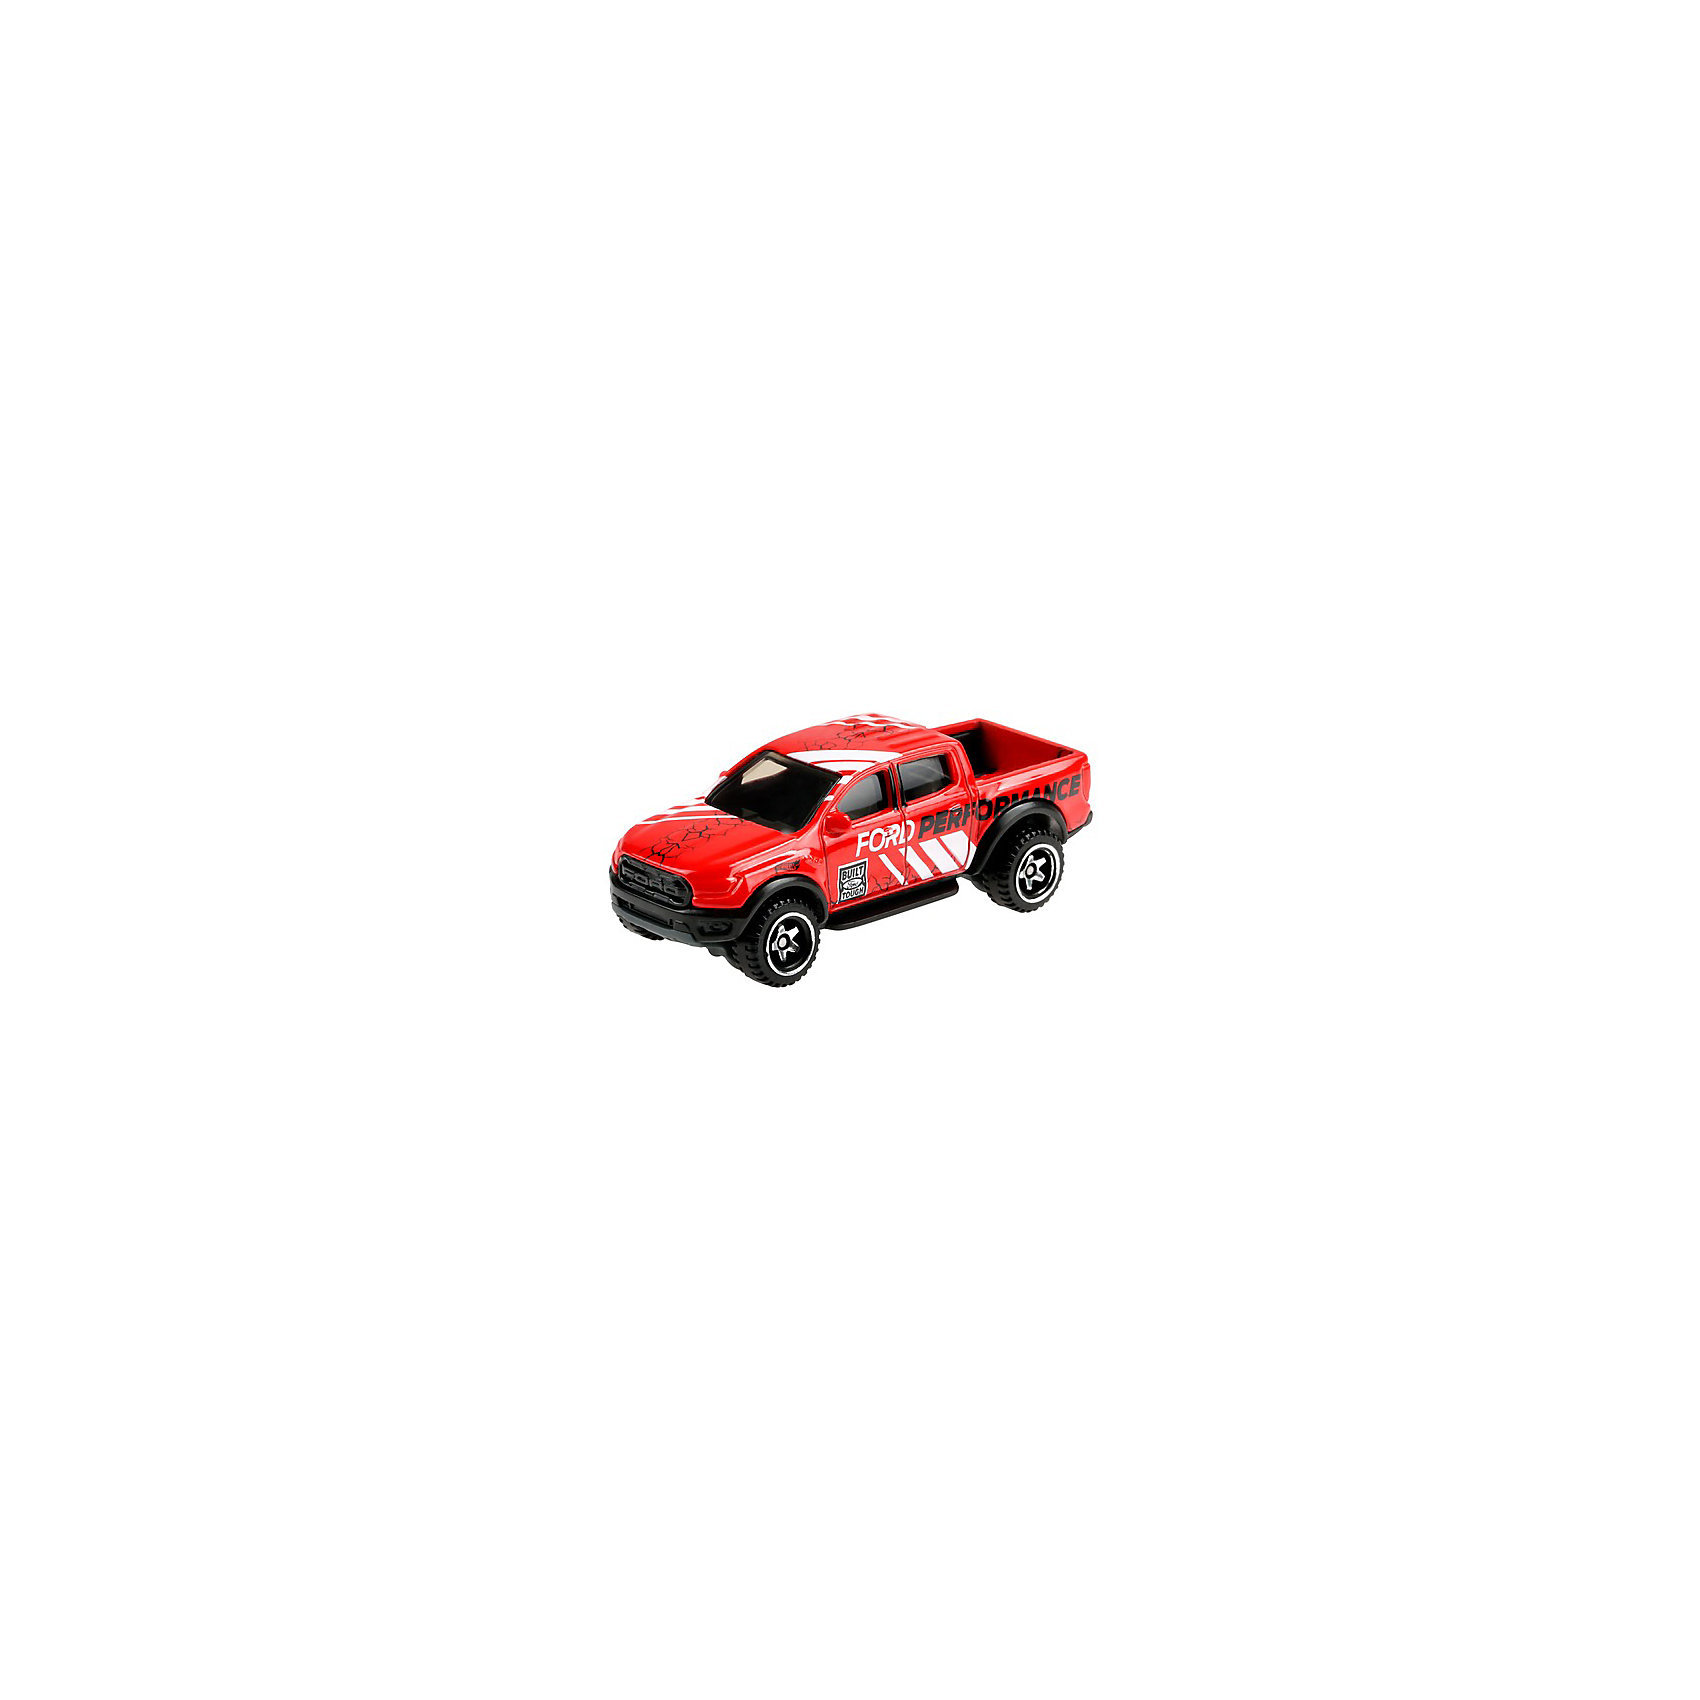 Базовая машинка Hot Wheels 19 Ford Ranger Raptor Mattel 16954697